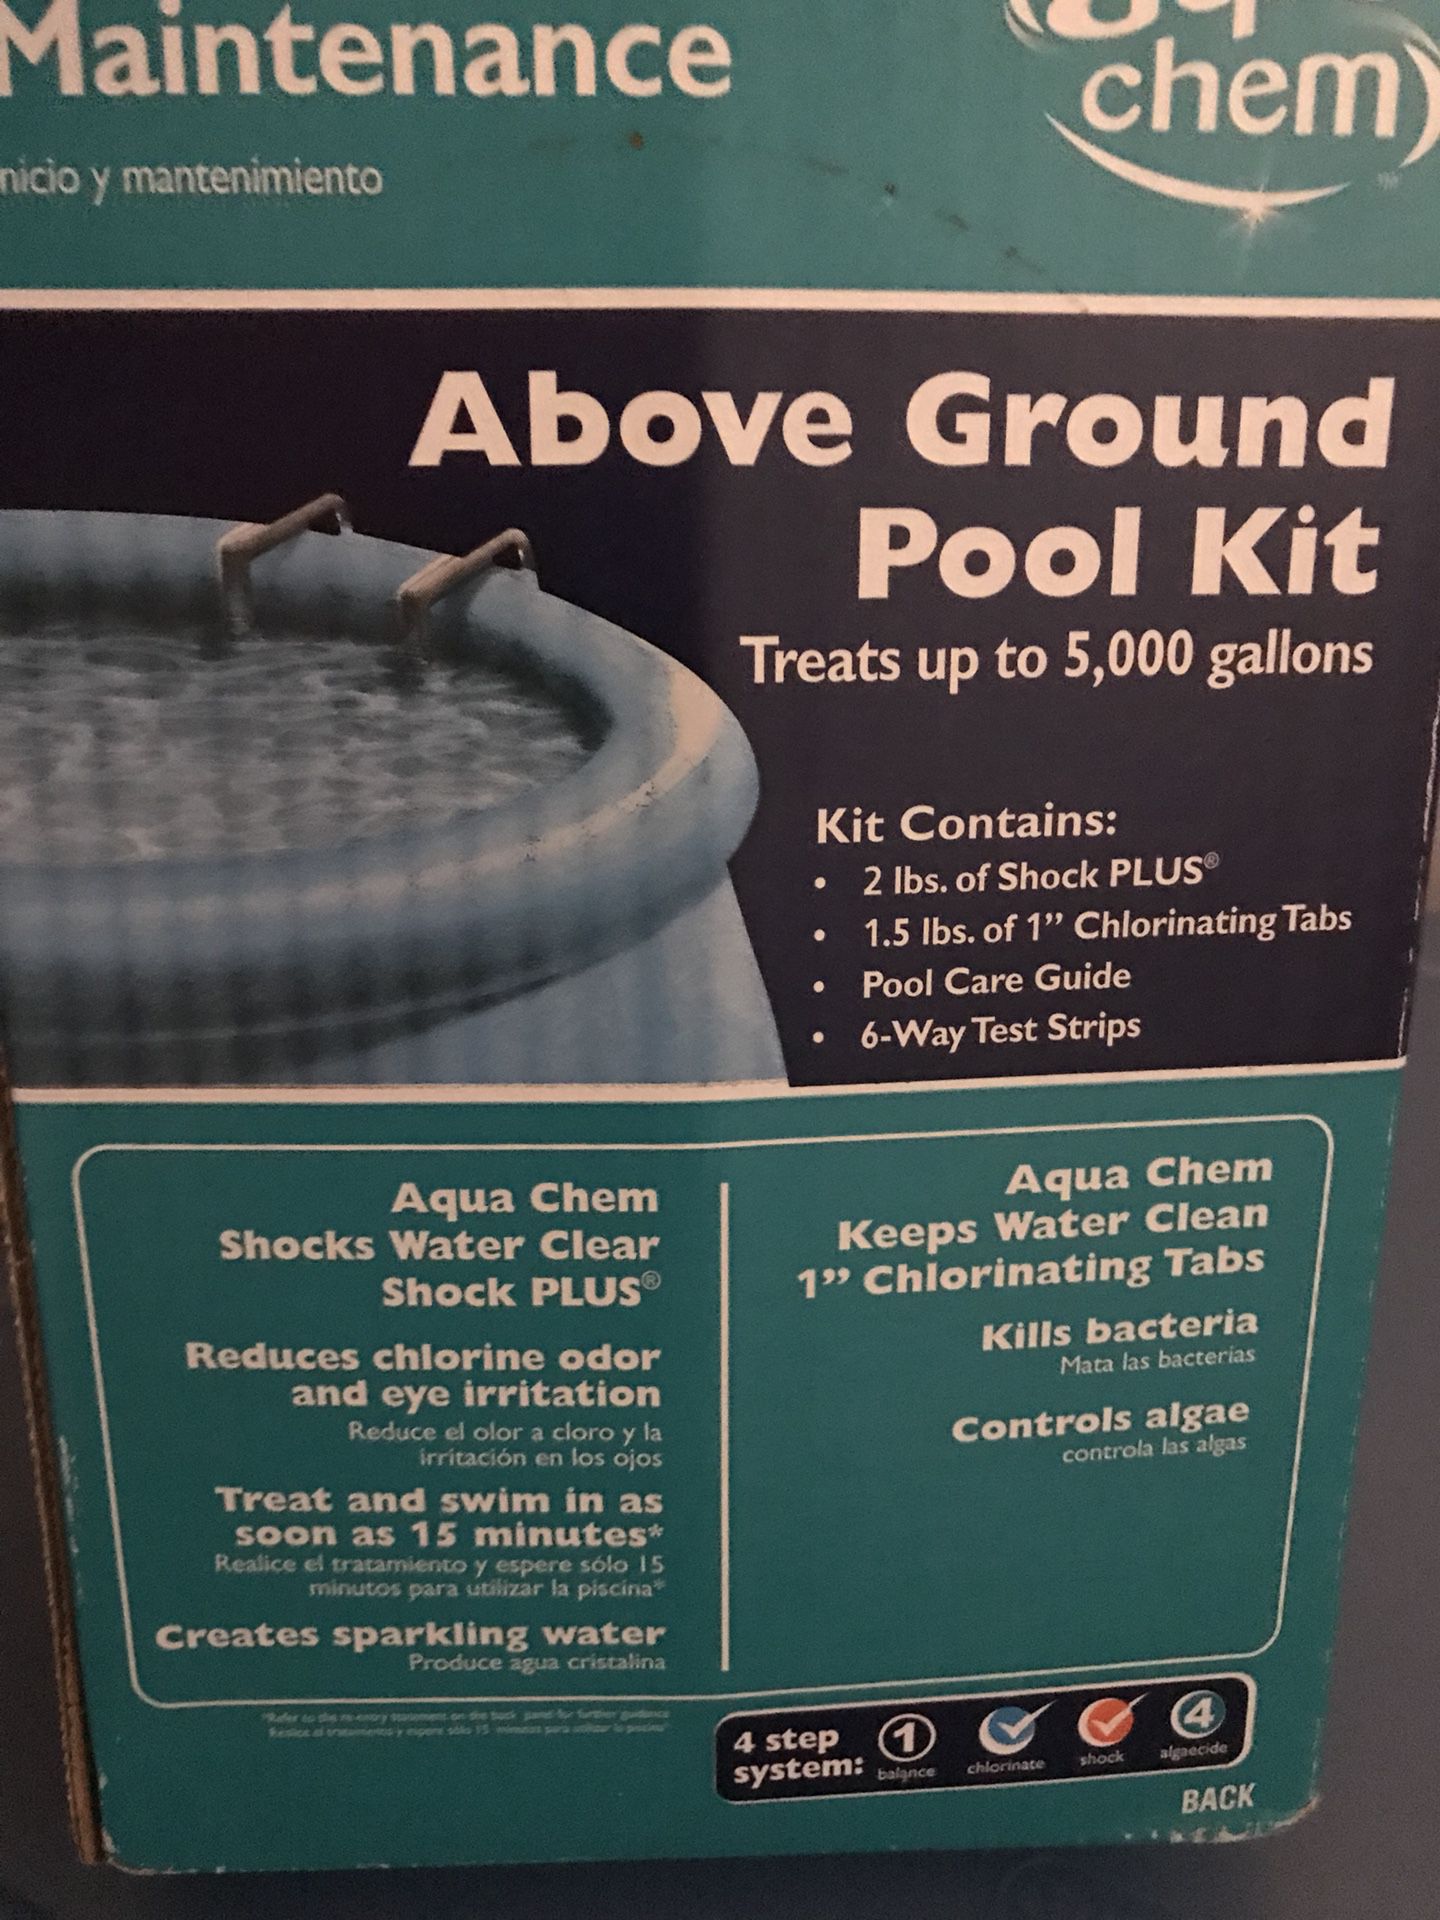 Pool kit